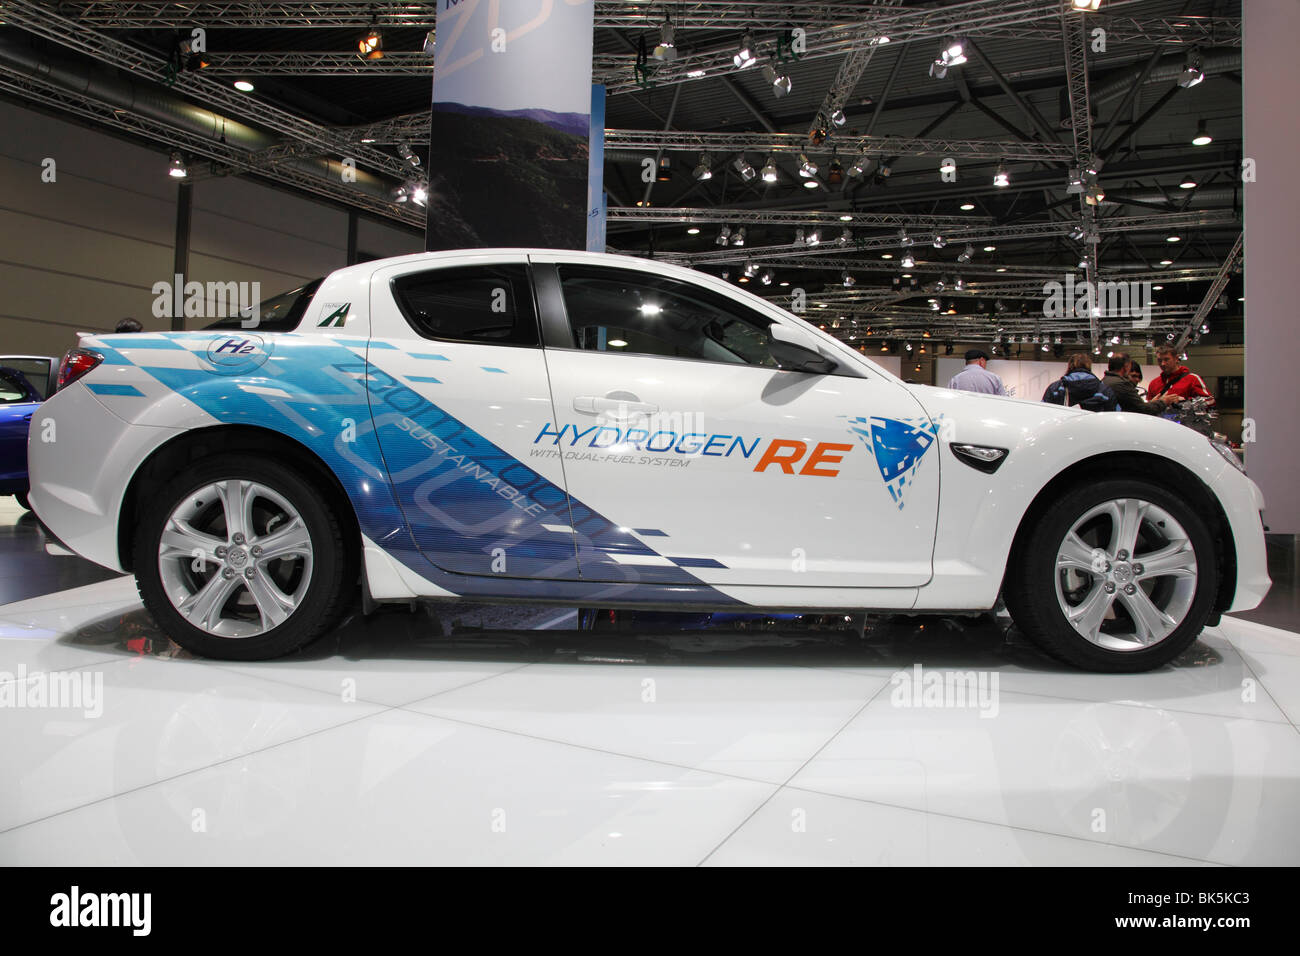 HydrogenRE Mazda à l'Auto Mobil International (AMI) - le Salon de l'automobile 2010 à Leipzig, Allemagne Banque D'Images